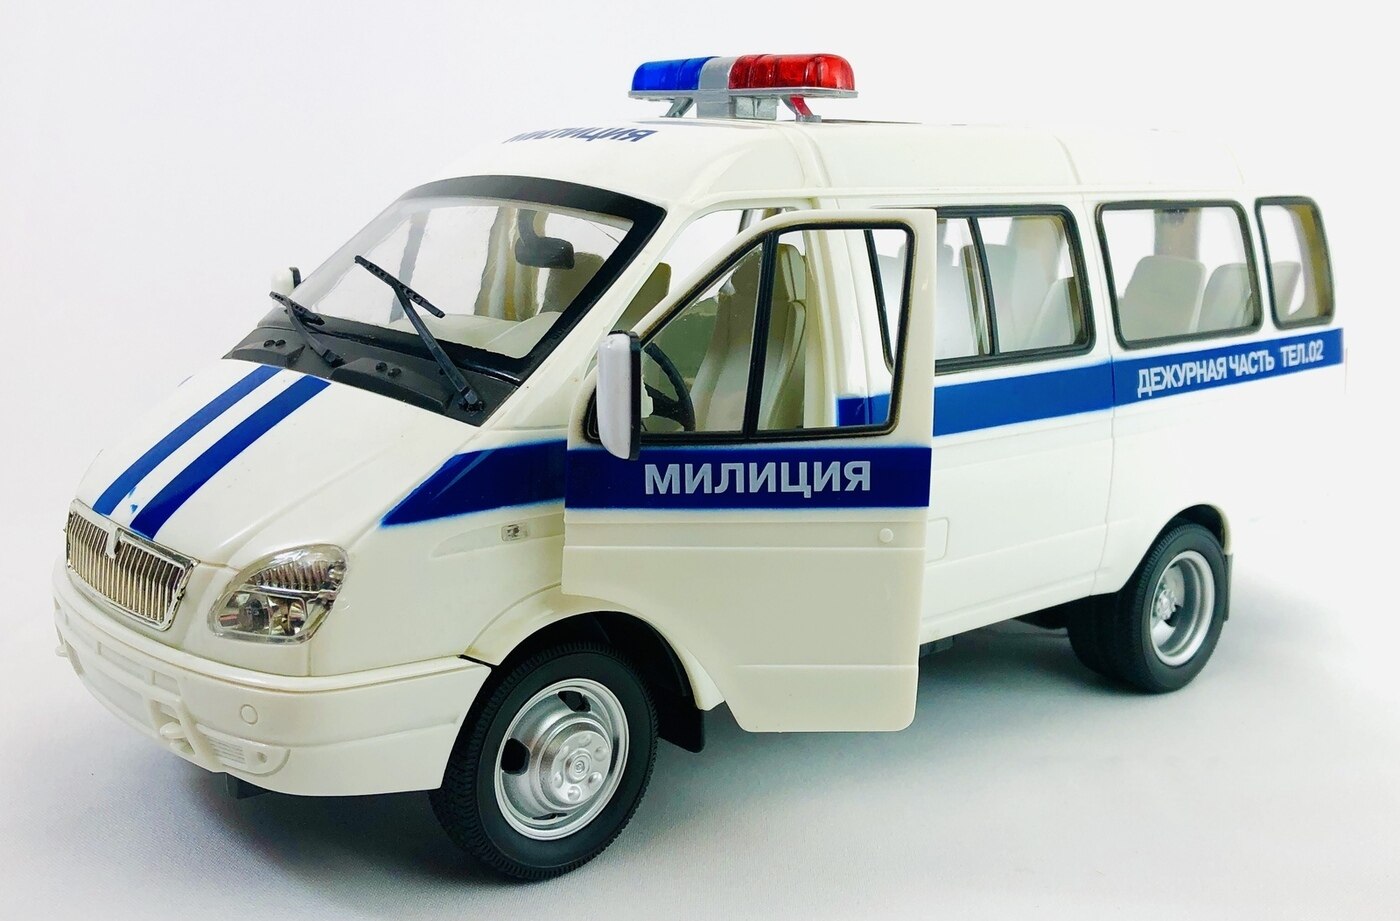 49 объявлений о продаже ГАЗ 3302 Газель синего цвета